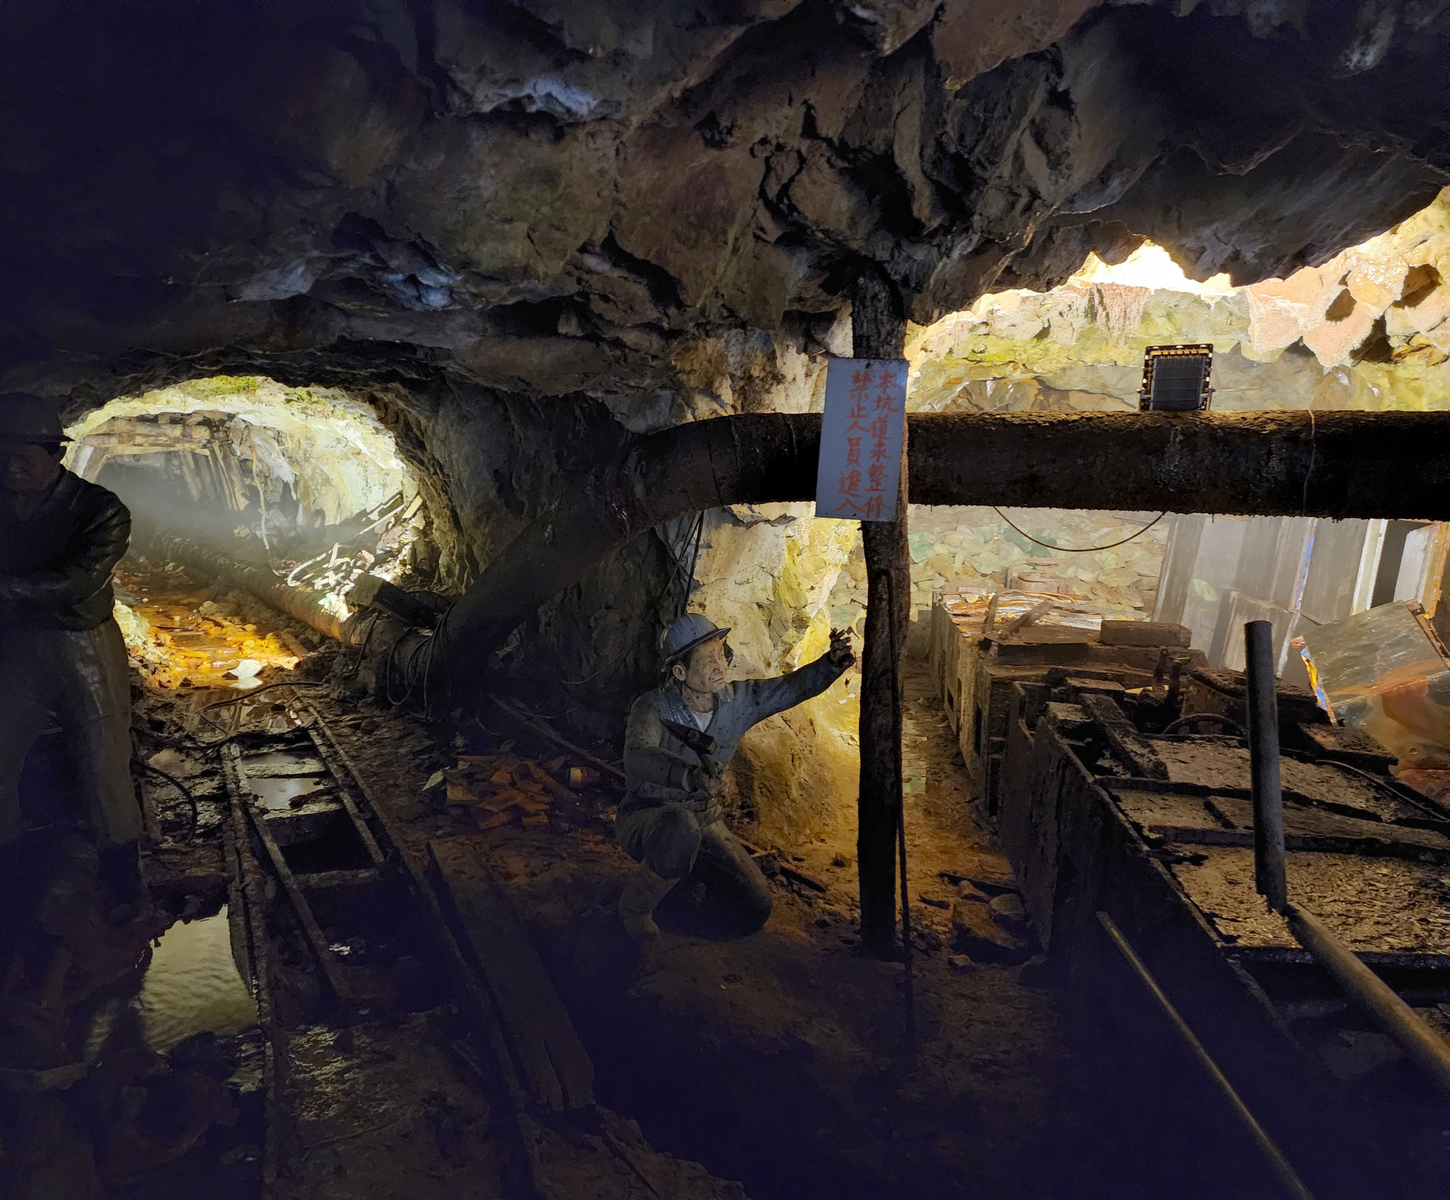 黃金博物館預計於10月完成本山五坑結構補強及修復，讓遊客可安全無虞體驗礦坑。